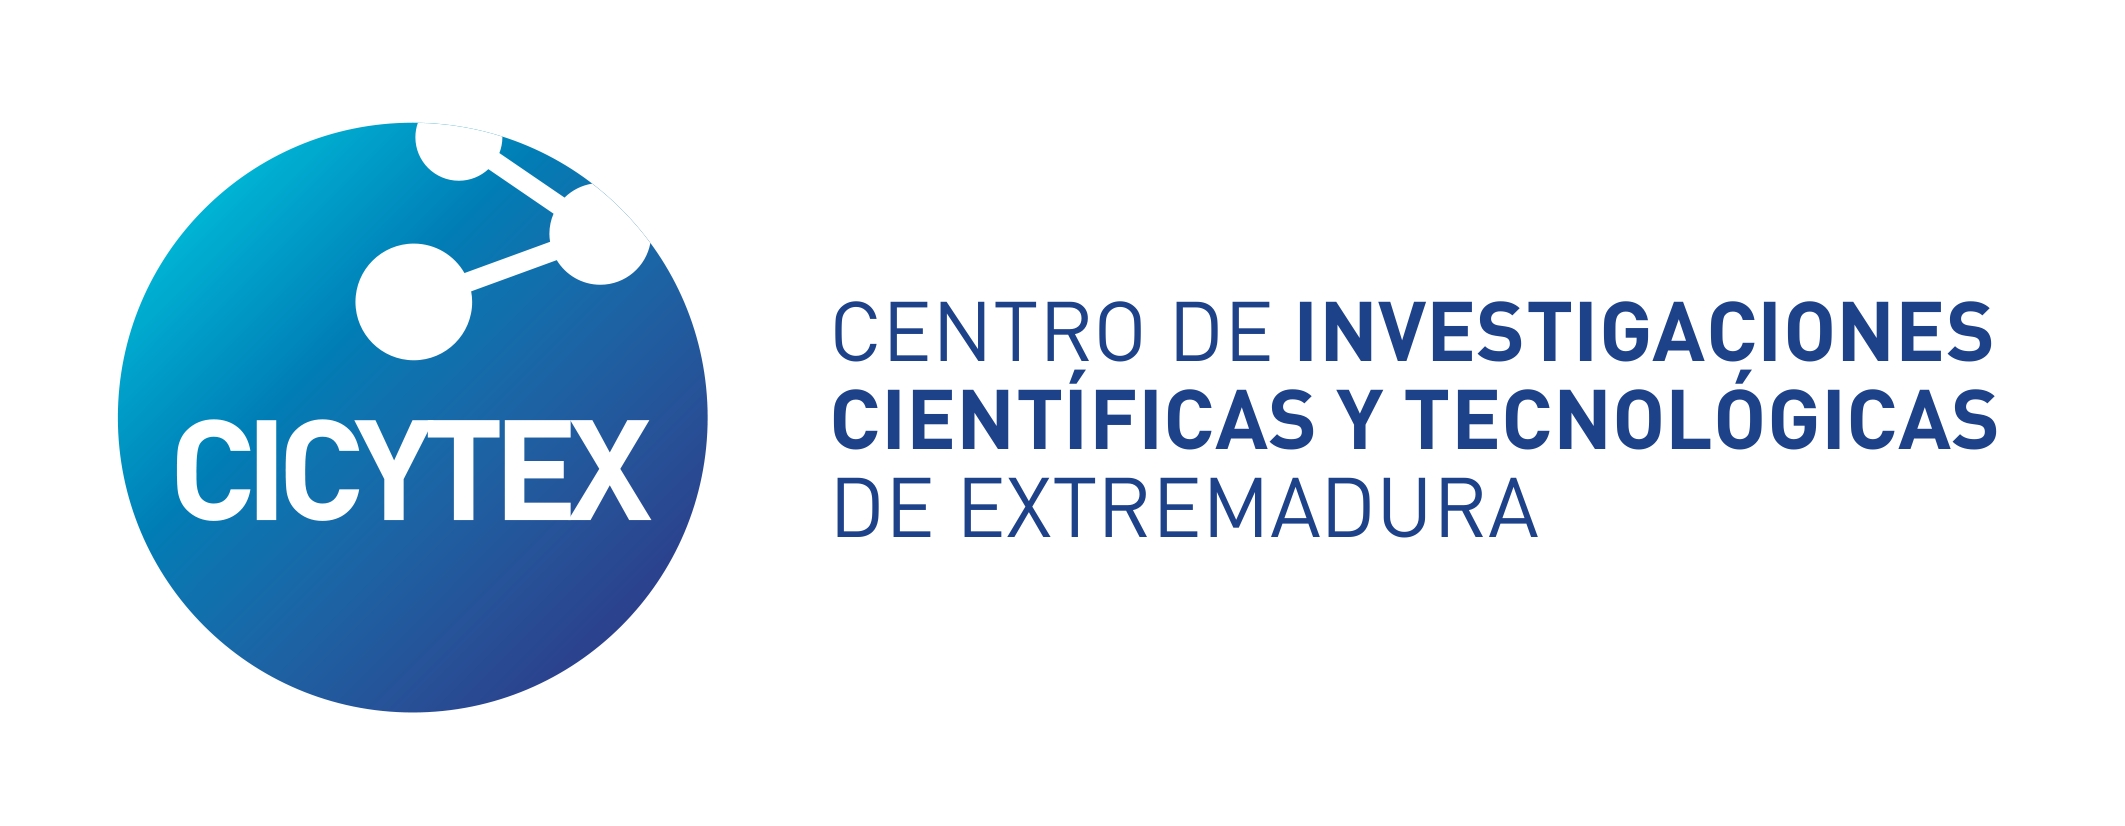 Logo de Centro de investigaciones científicas y tecnologicas de Extremadura - CICYTEX